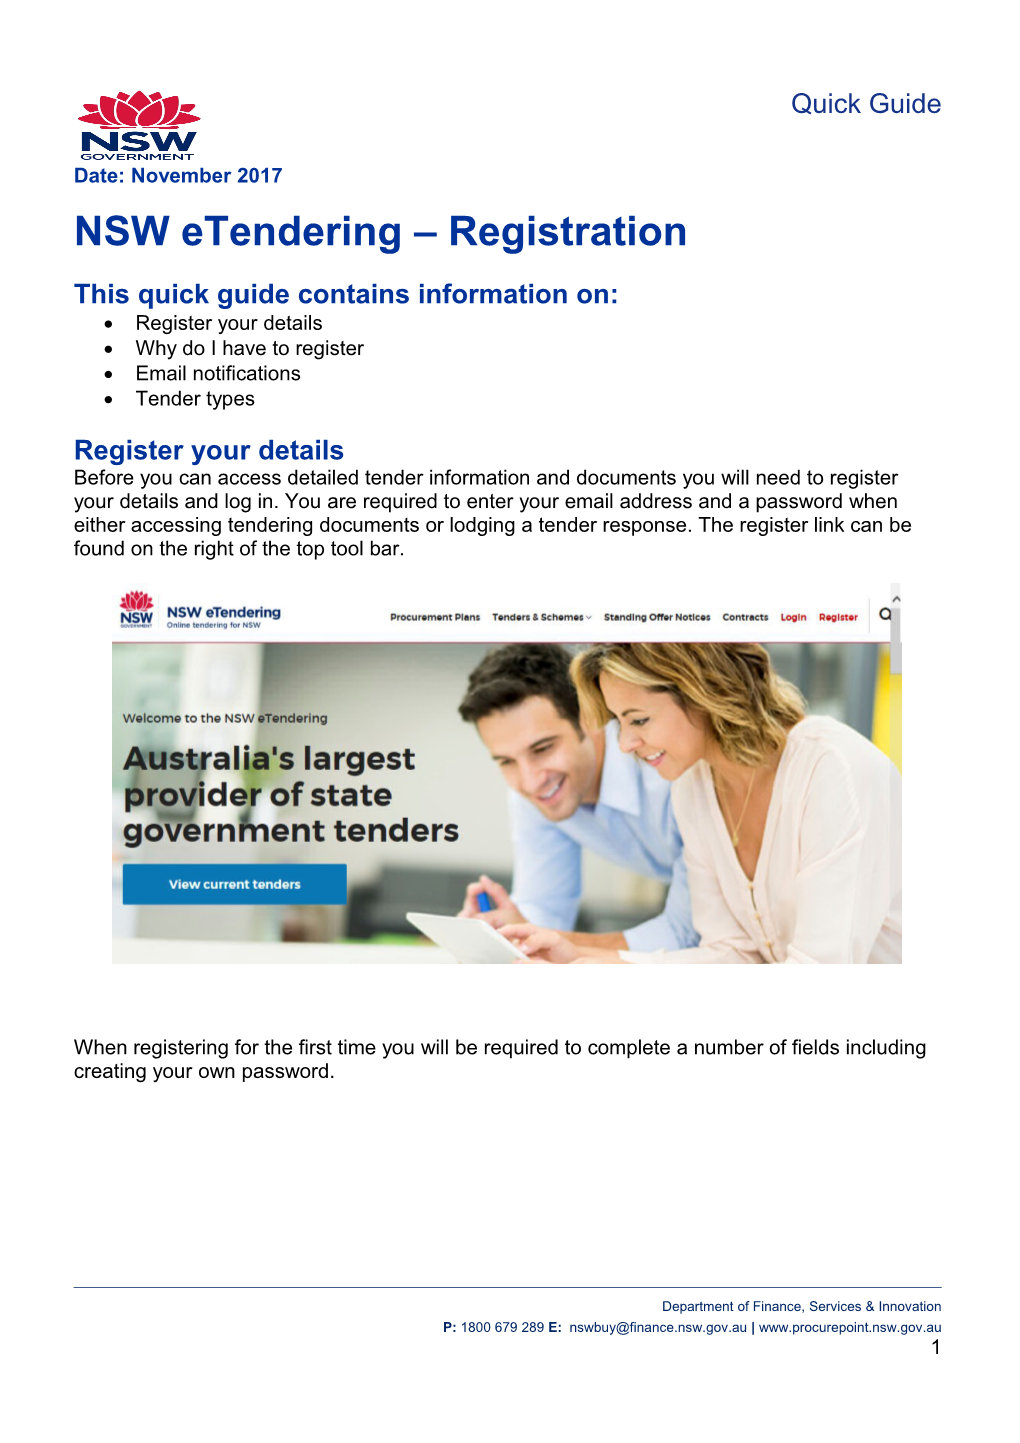 NSW Etendering - Register Your Details